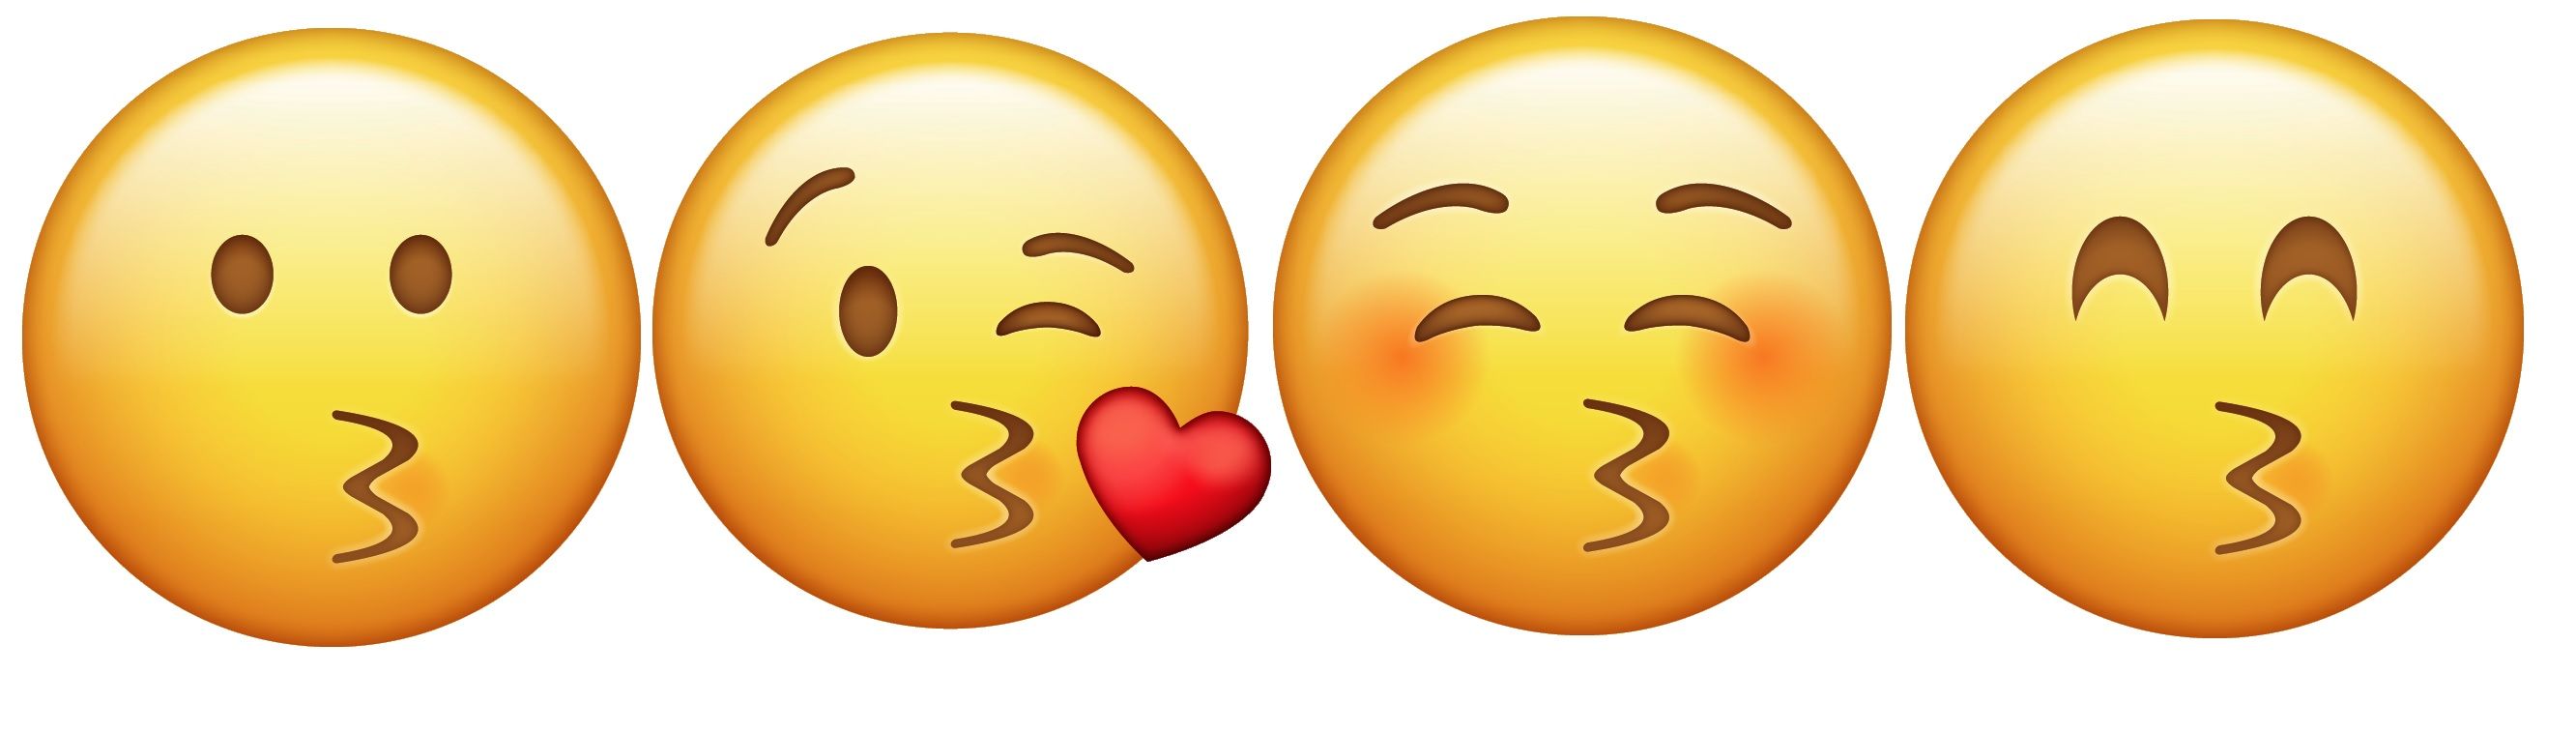 kiss emojis